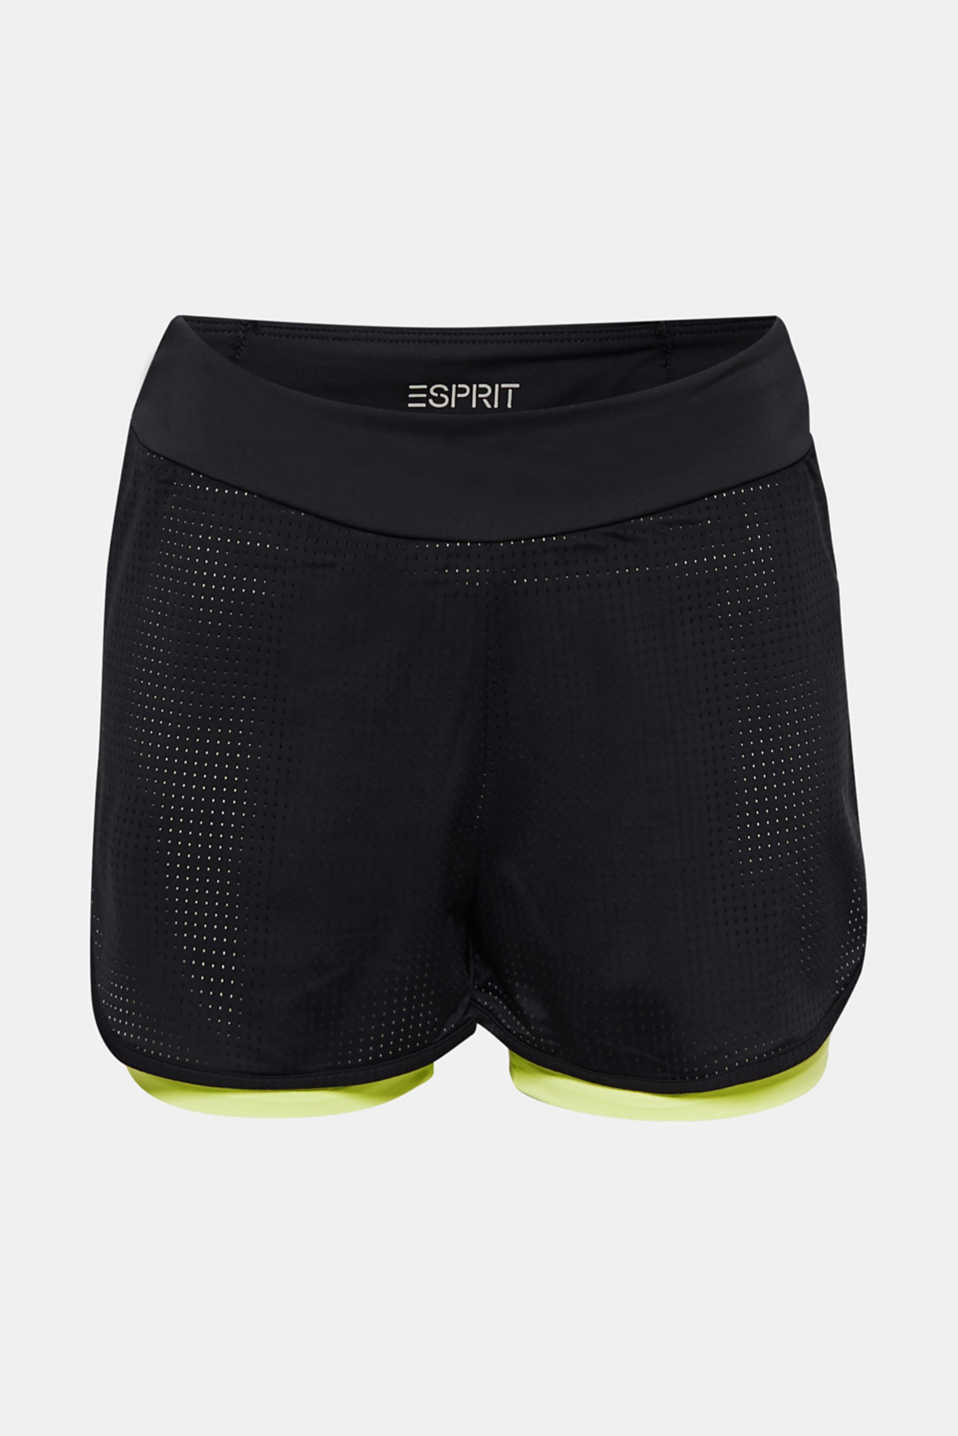 Esprit Active Shorts mit E-Dry Technologie für ein leichtes Tragegefühl, atmungsaktiv und schnelltrocknend